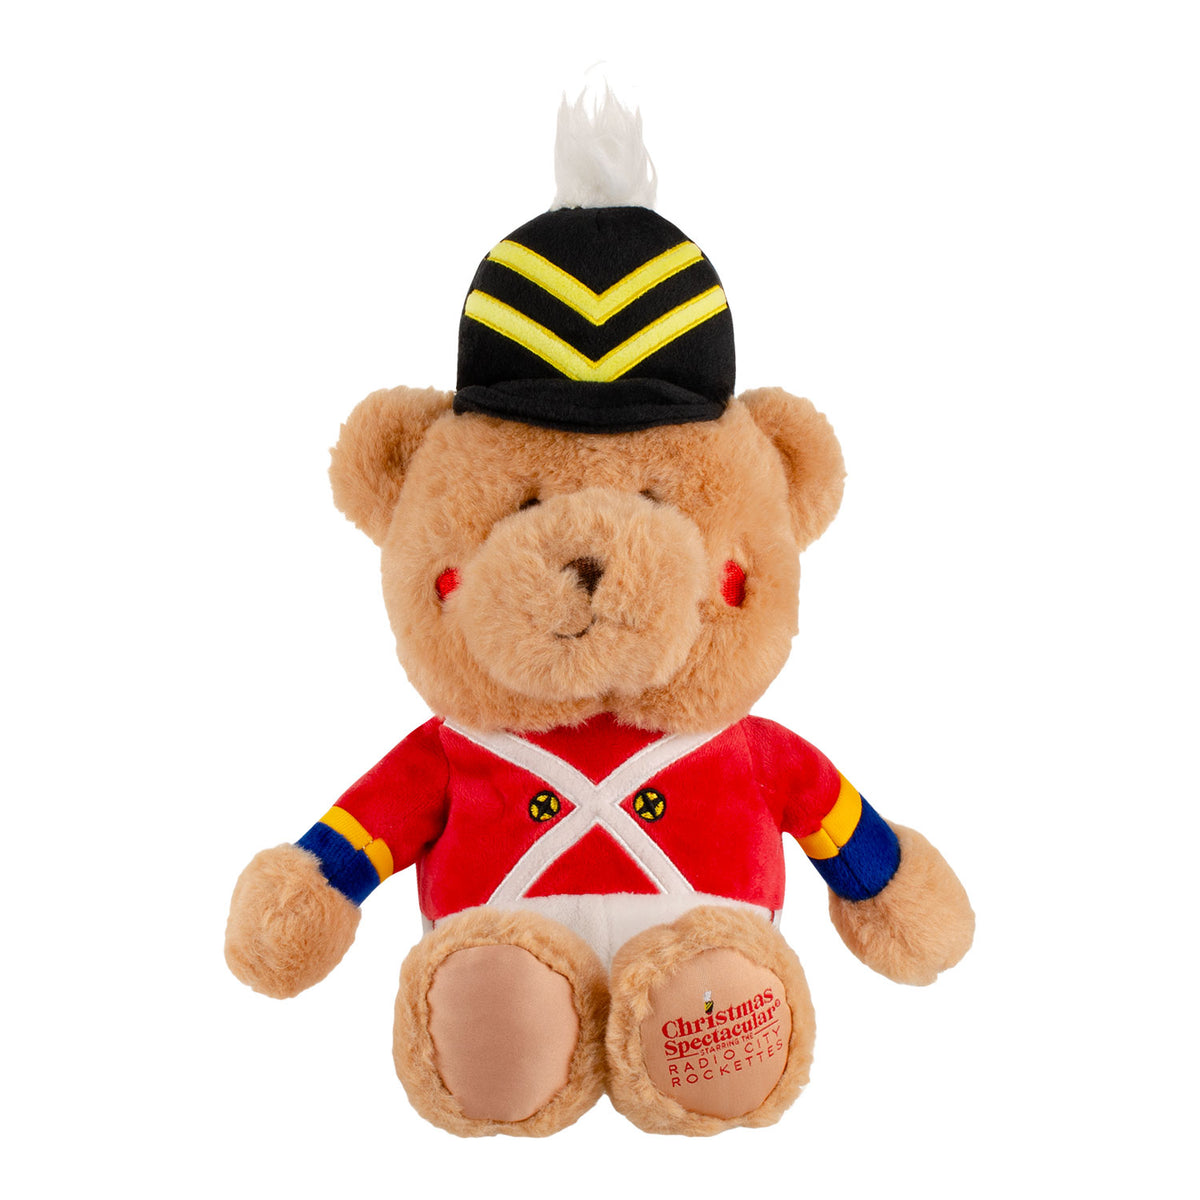 Soldier Teddy Bear Plush Toy